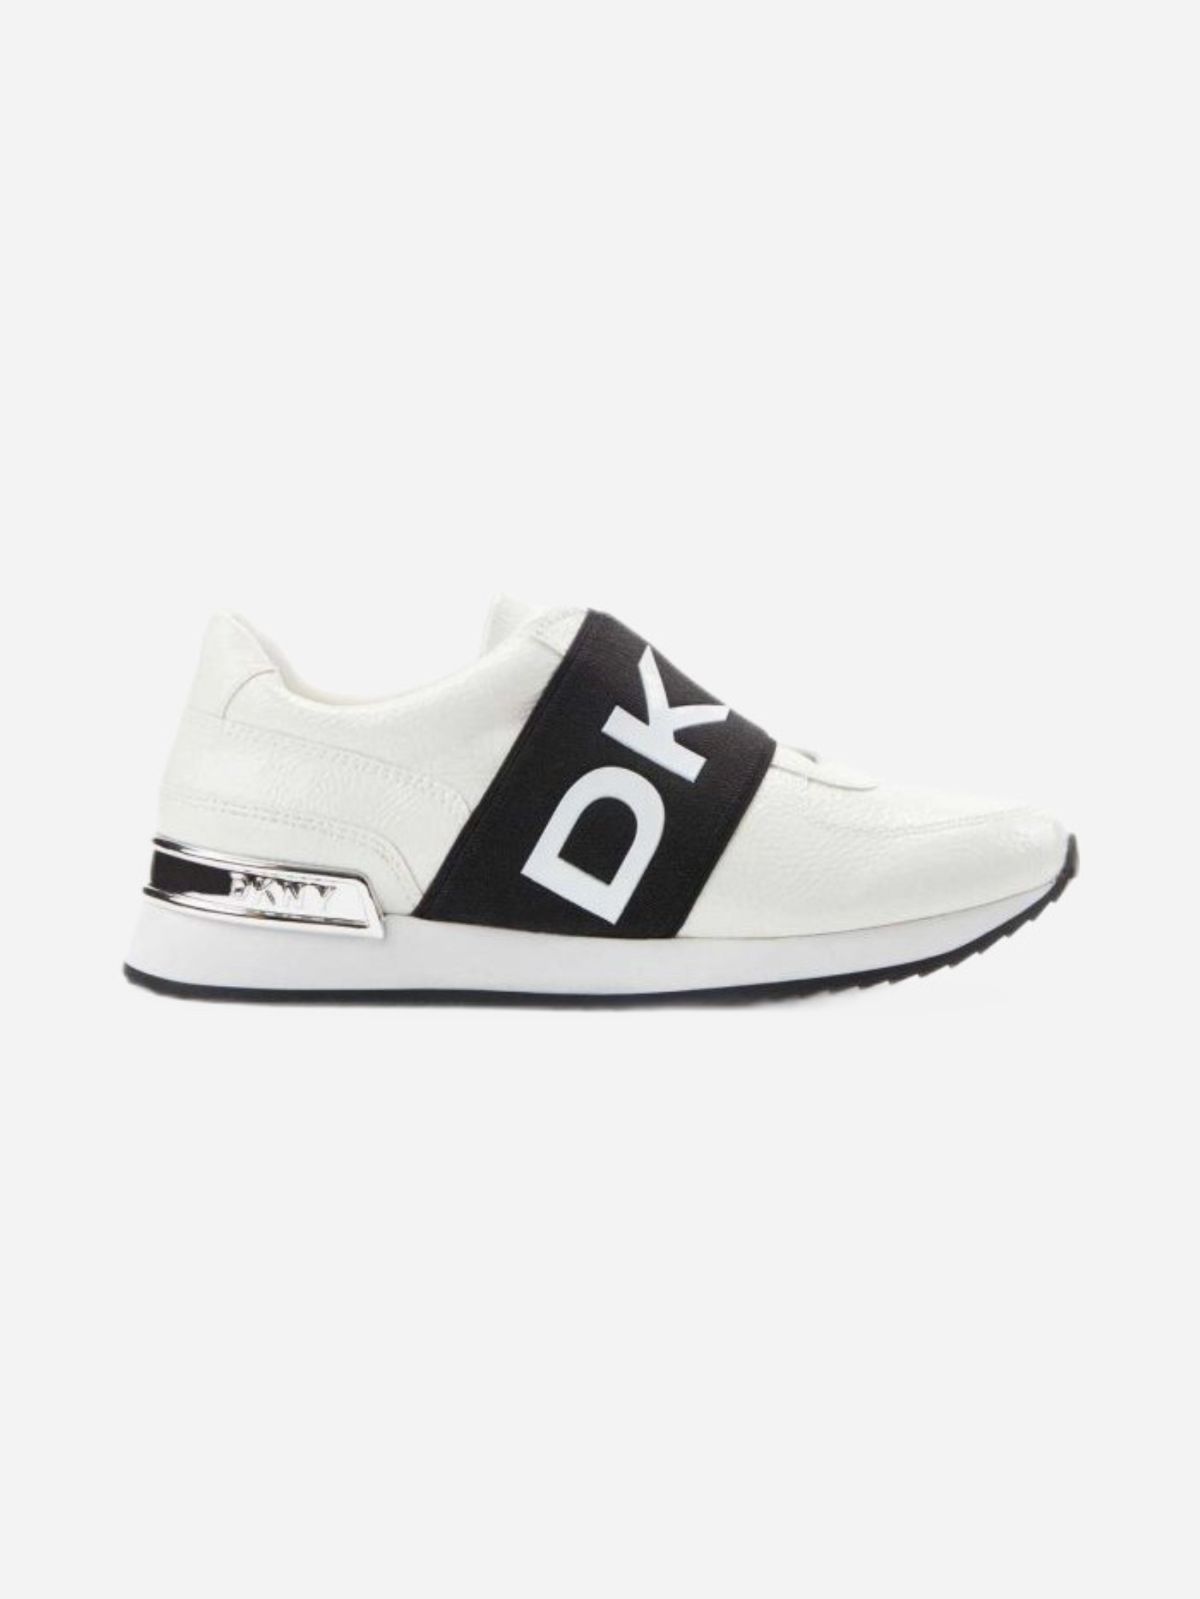  נעלי סניקרס עם לוגו / נשים של DKNY